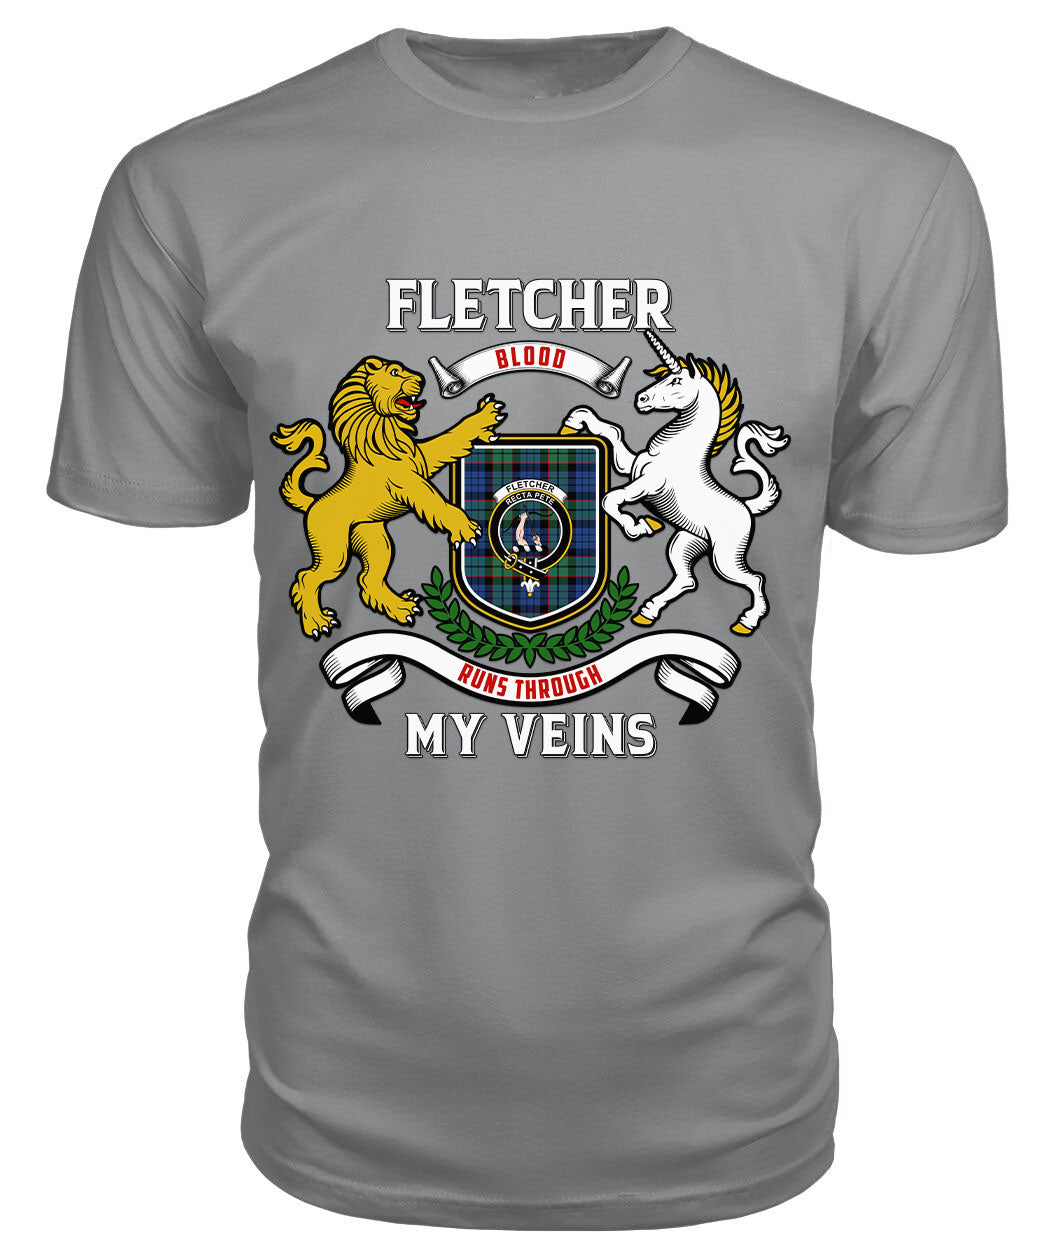 Fletcher Ancient Tartan Crest 2D T-shirt - Blood Runs Through My Veins Style